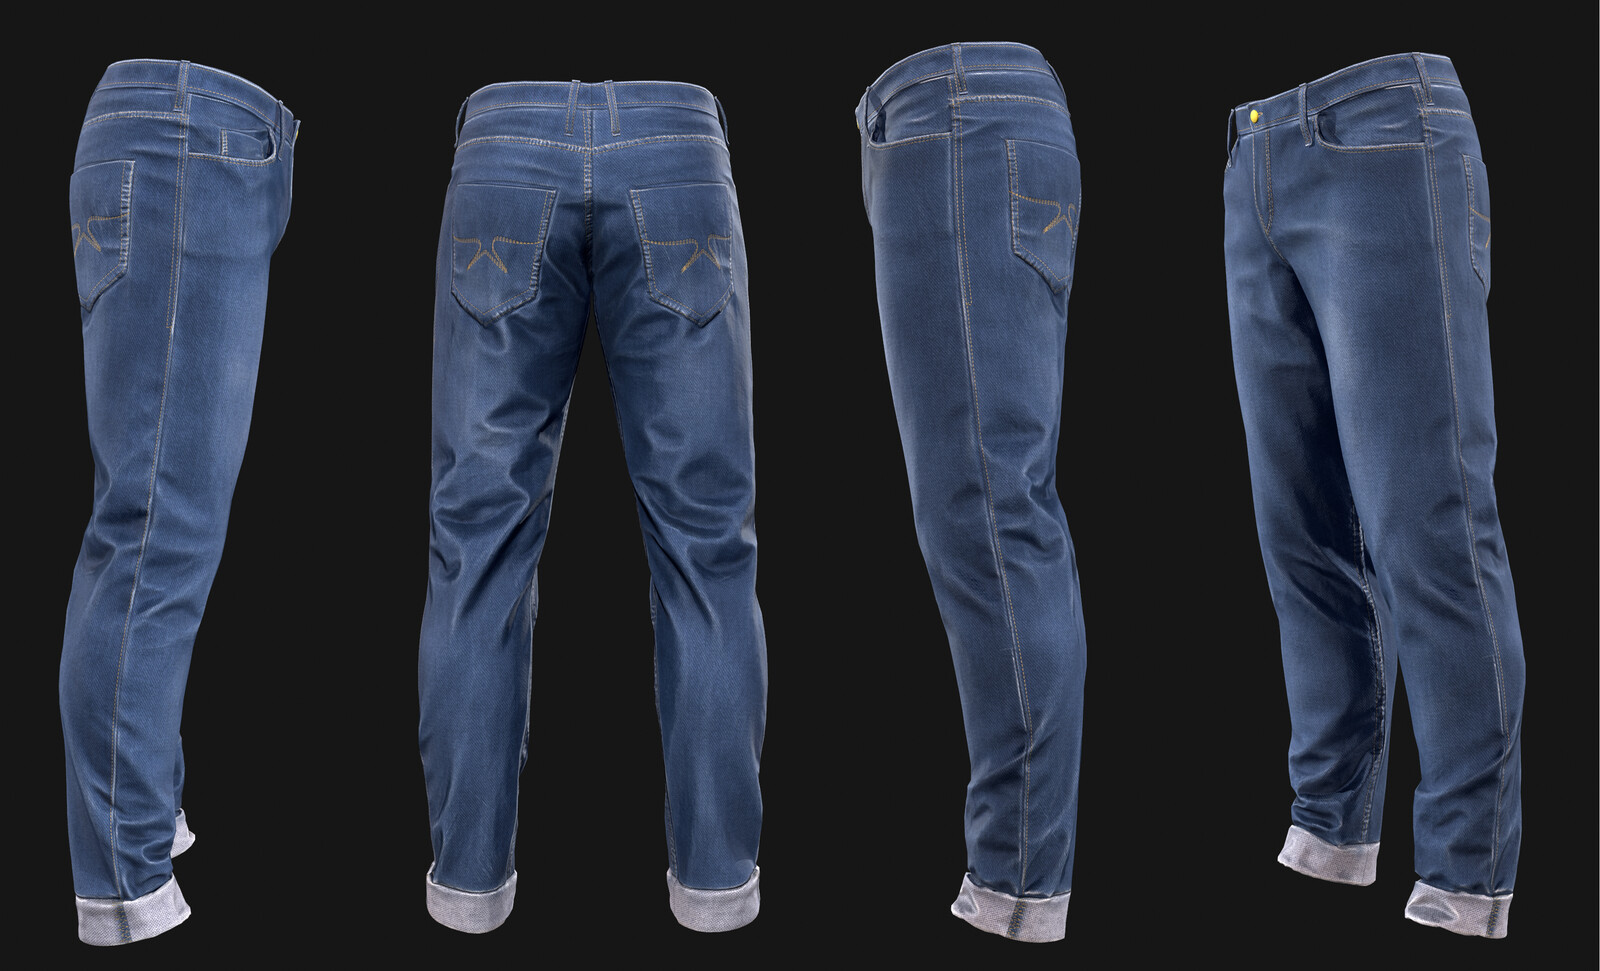 Nirmit Garg - Regular Jeans